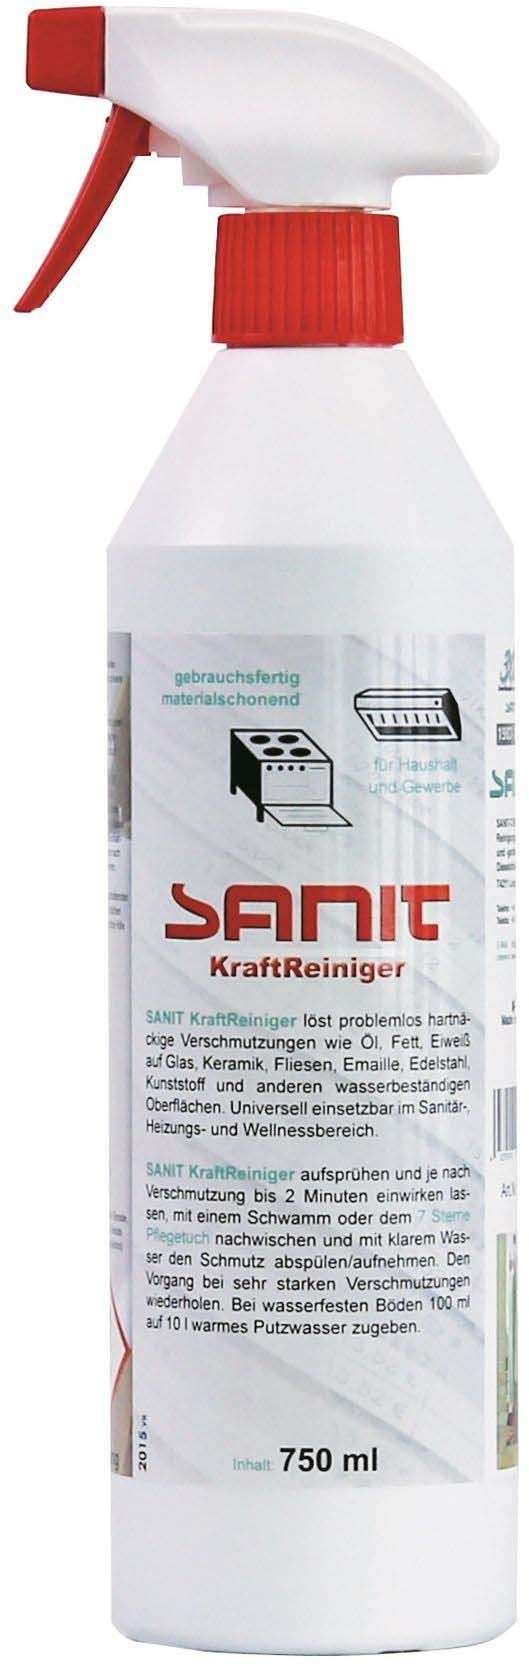 Picture of SANIT KraftReiniger power cleamer 750 ml 3009